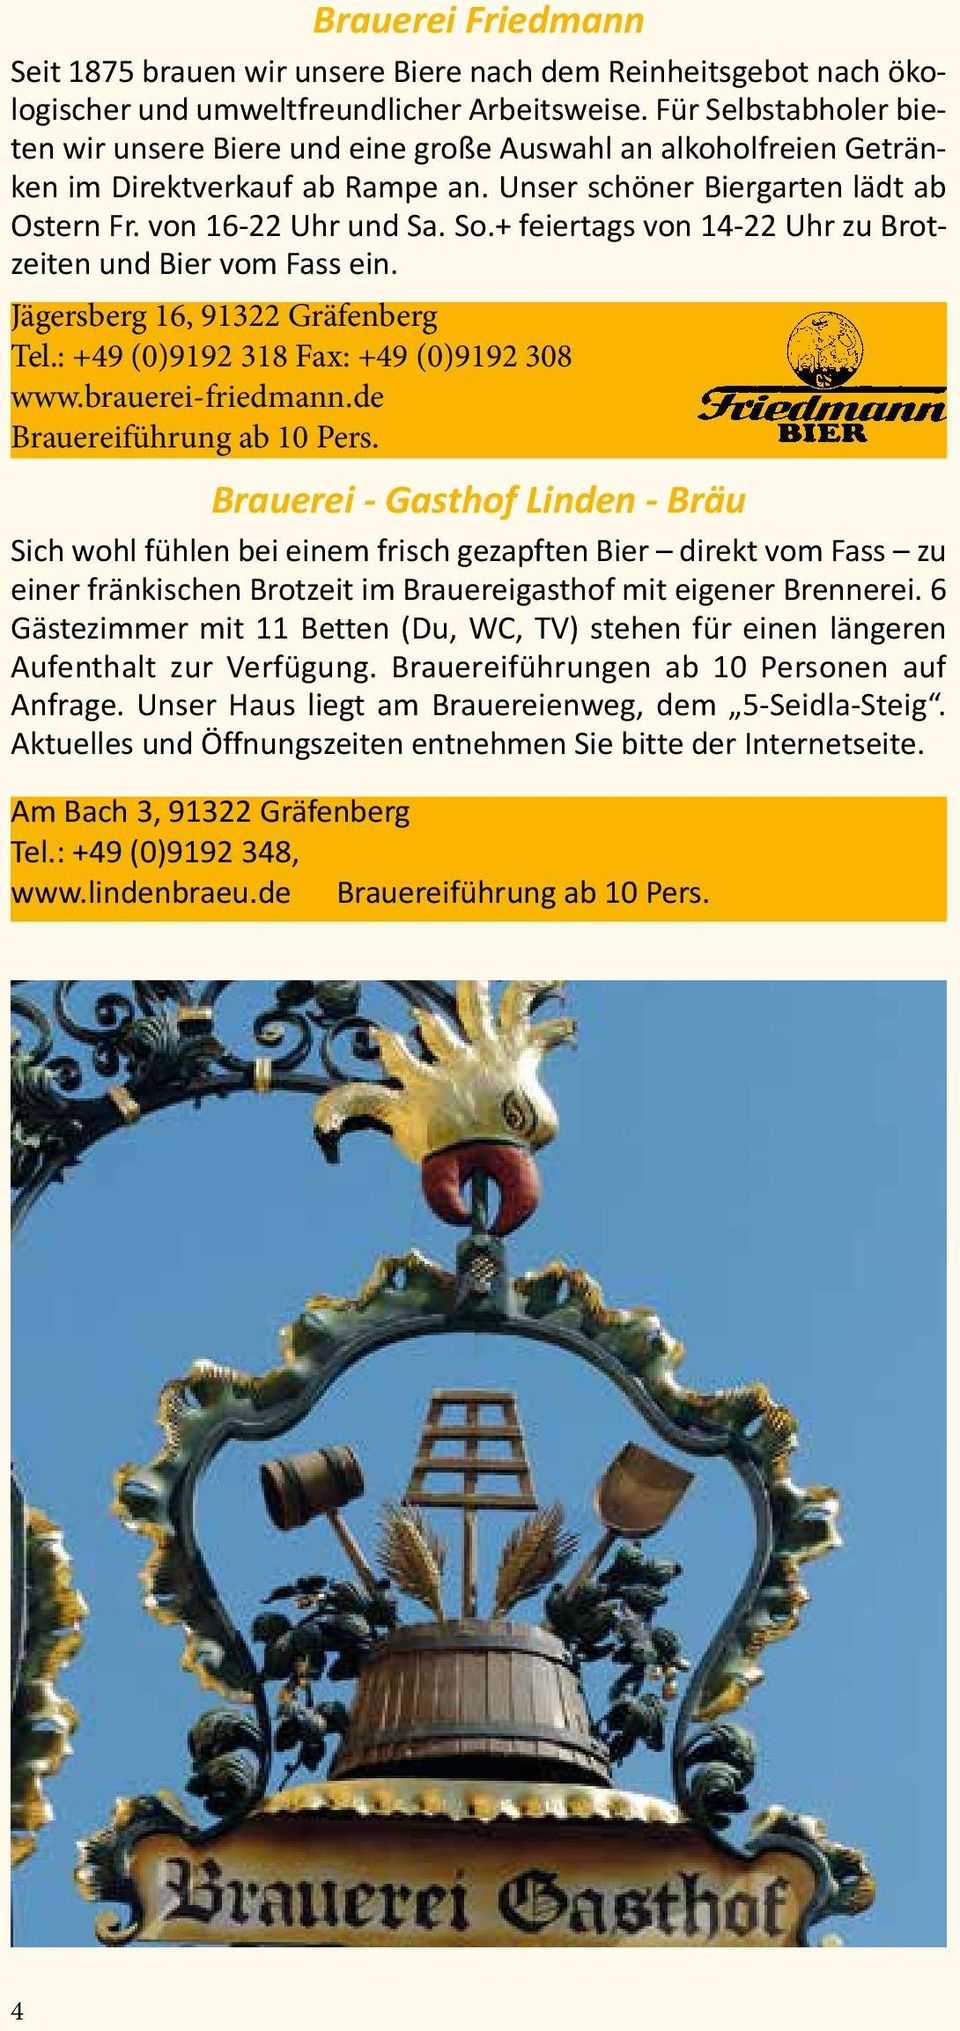 + feiertags von 14-22 Uhr zu Brotzeiten und Bier vom Fass ein. Jägersberg 16, 91322 Gräfenberg Tel.: +49 (0)9192 318 Fax: +49 (0)9192 308 www.brauerei-friedmann.de Brauereiführung ab 10 Pers.